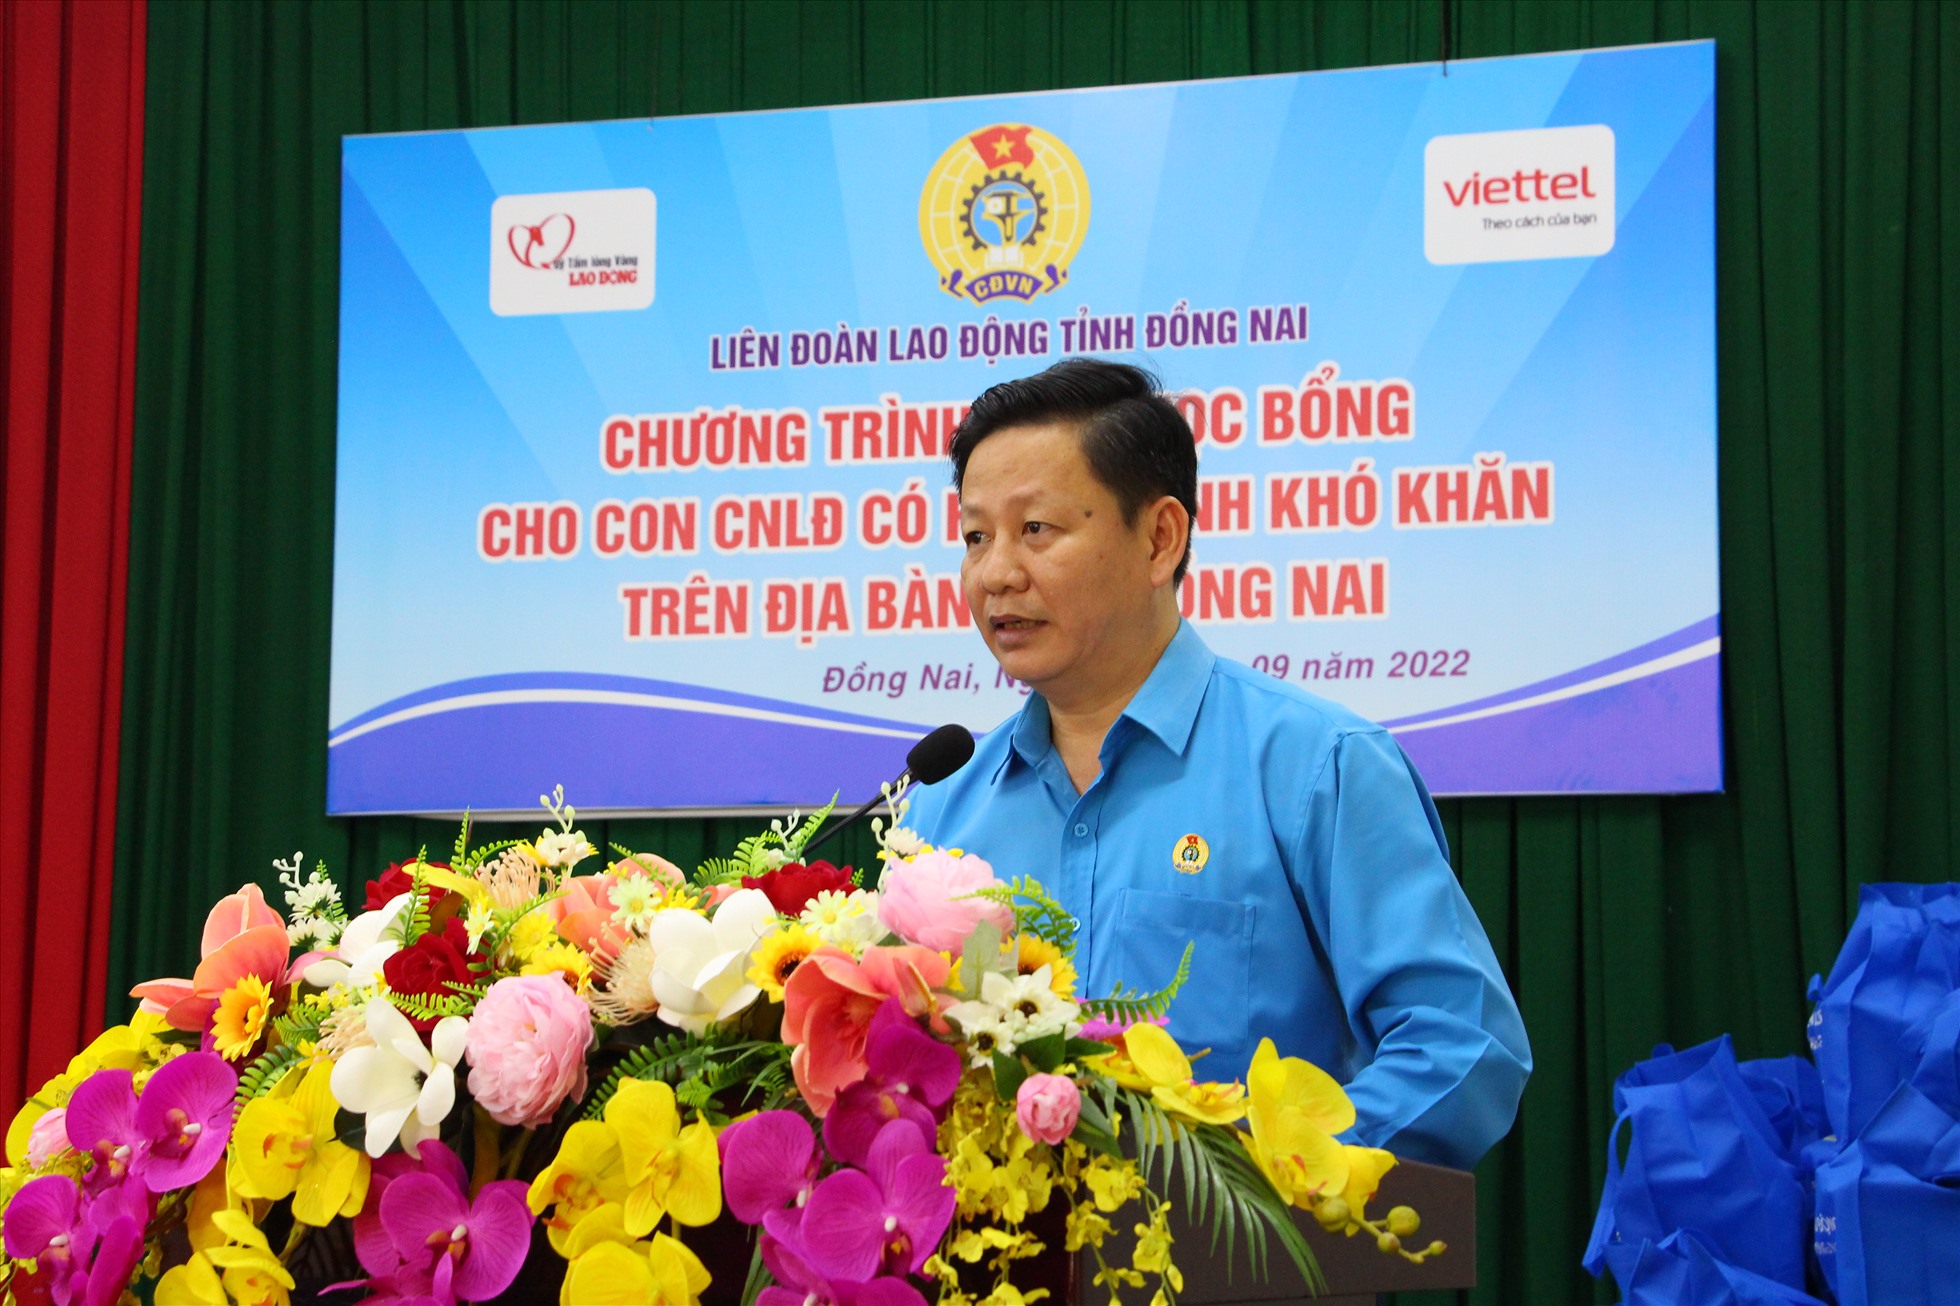 Phó chủ tịch LĐLĐ tỉnh Đồng Nai Huỳnh Phước Sang phát biểu tại chương trình trao học bổng. Ảnh: Hà Anh Chiến